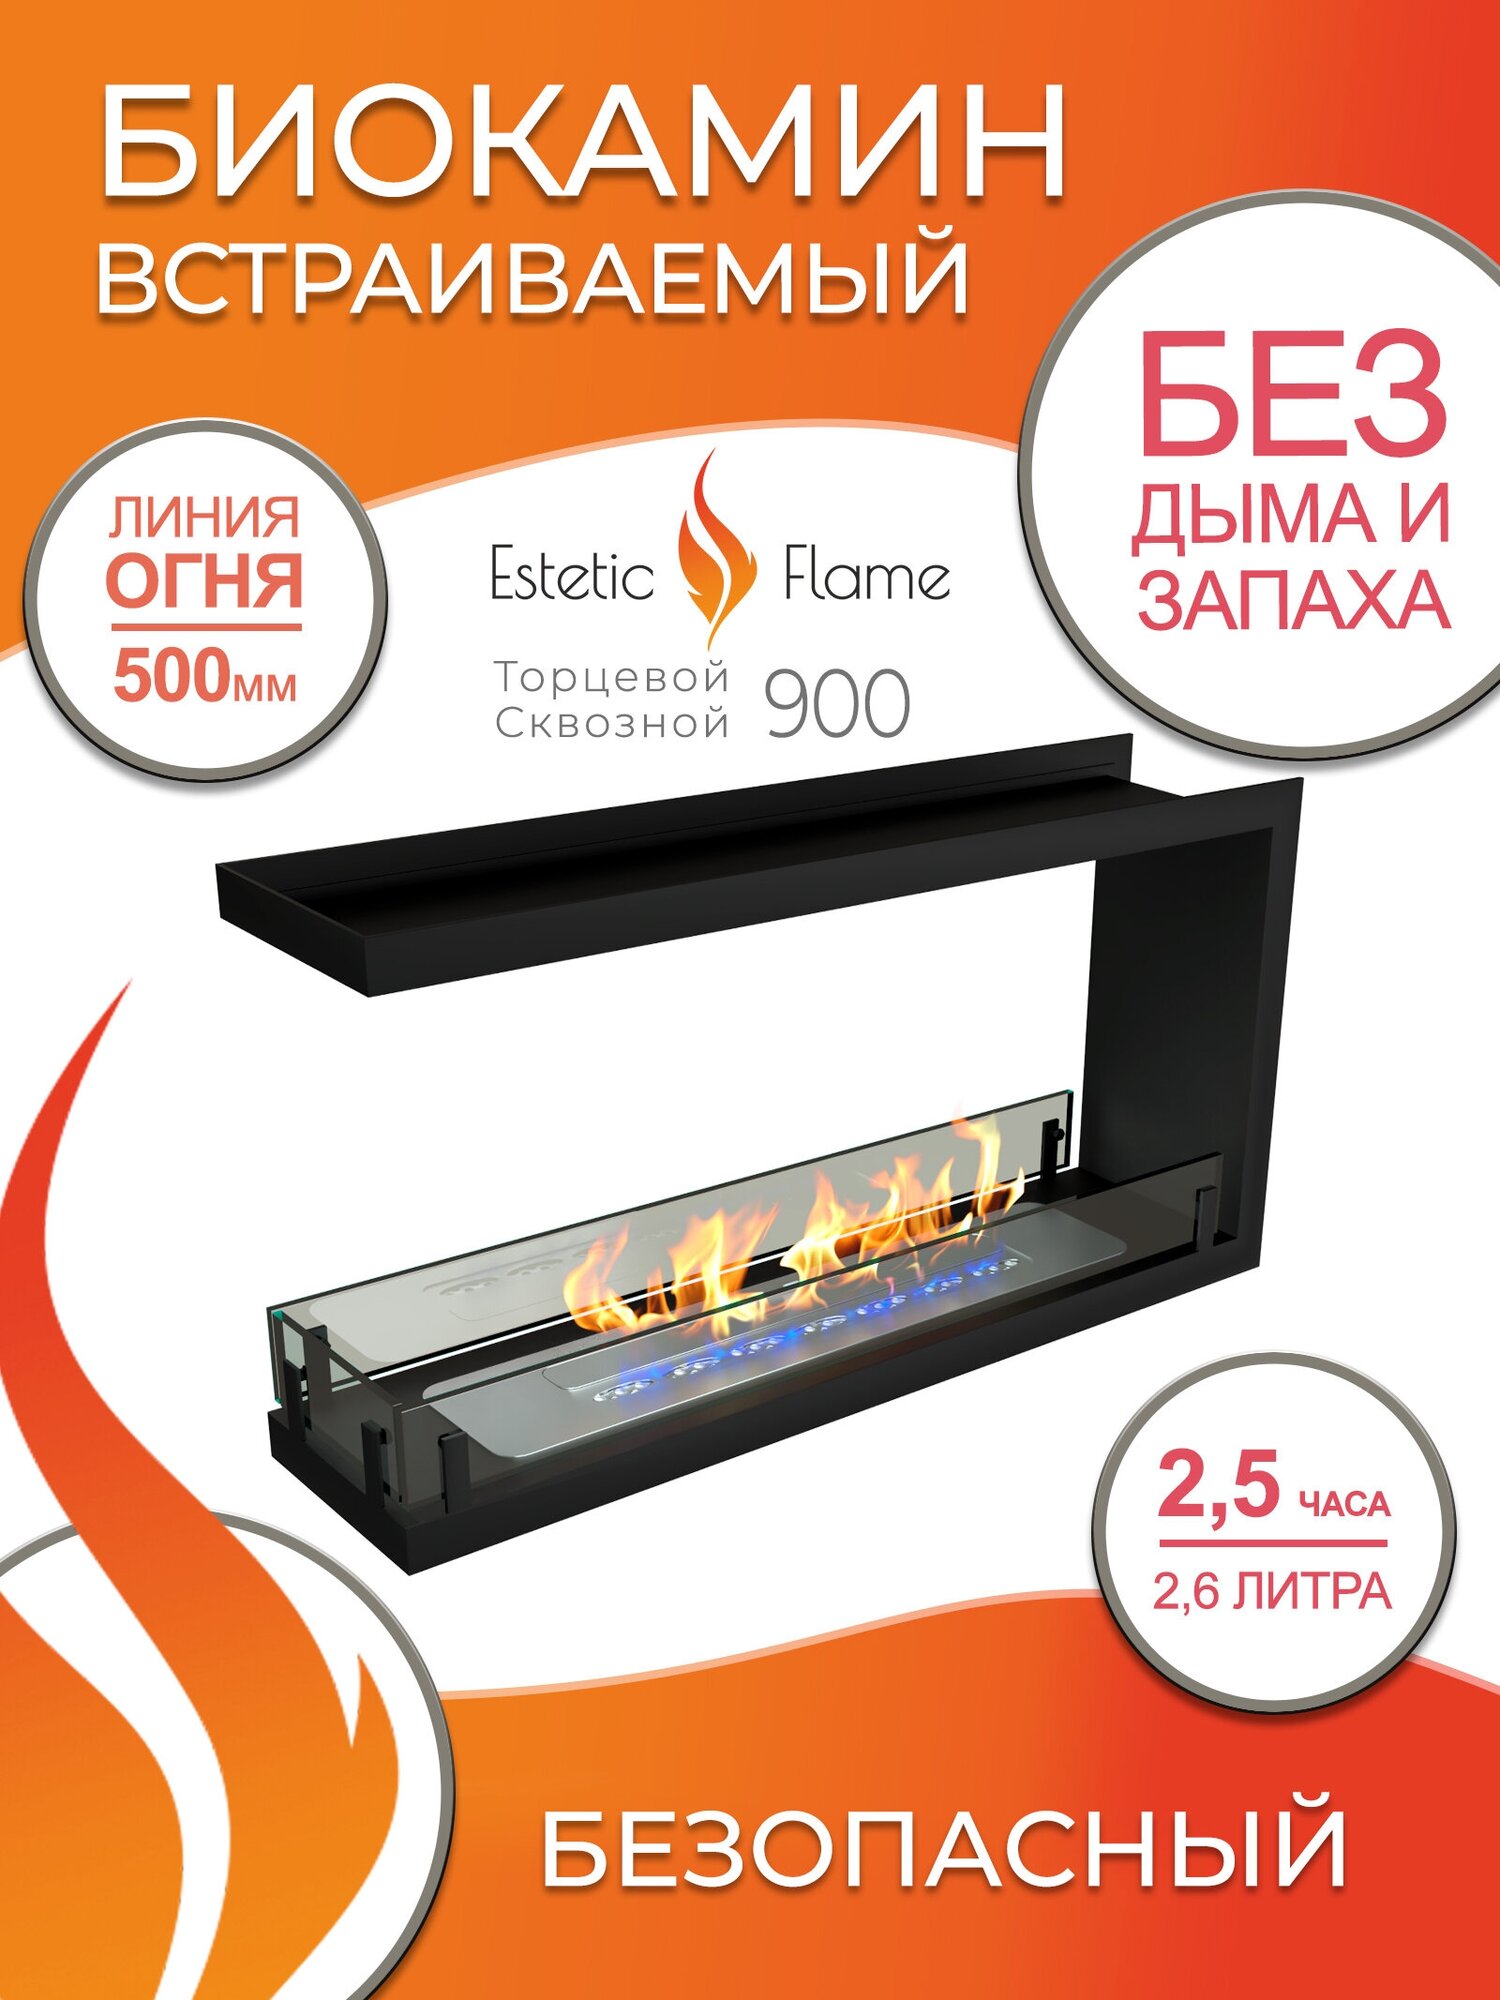 Биокамин Estetic Flame Contour торцевой сквозной 900 для дома и квартиры